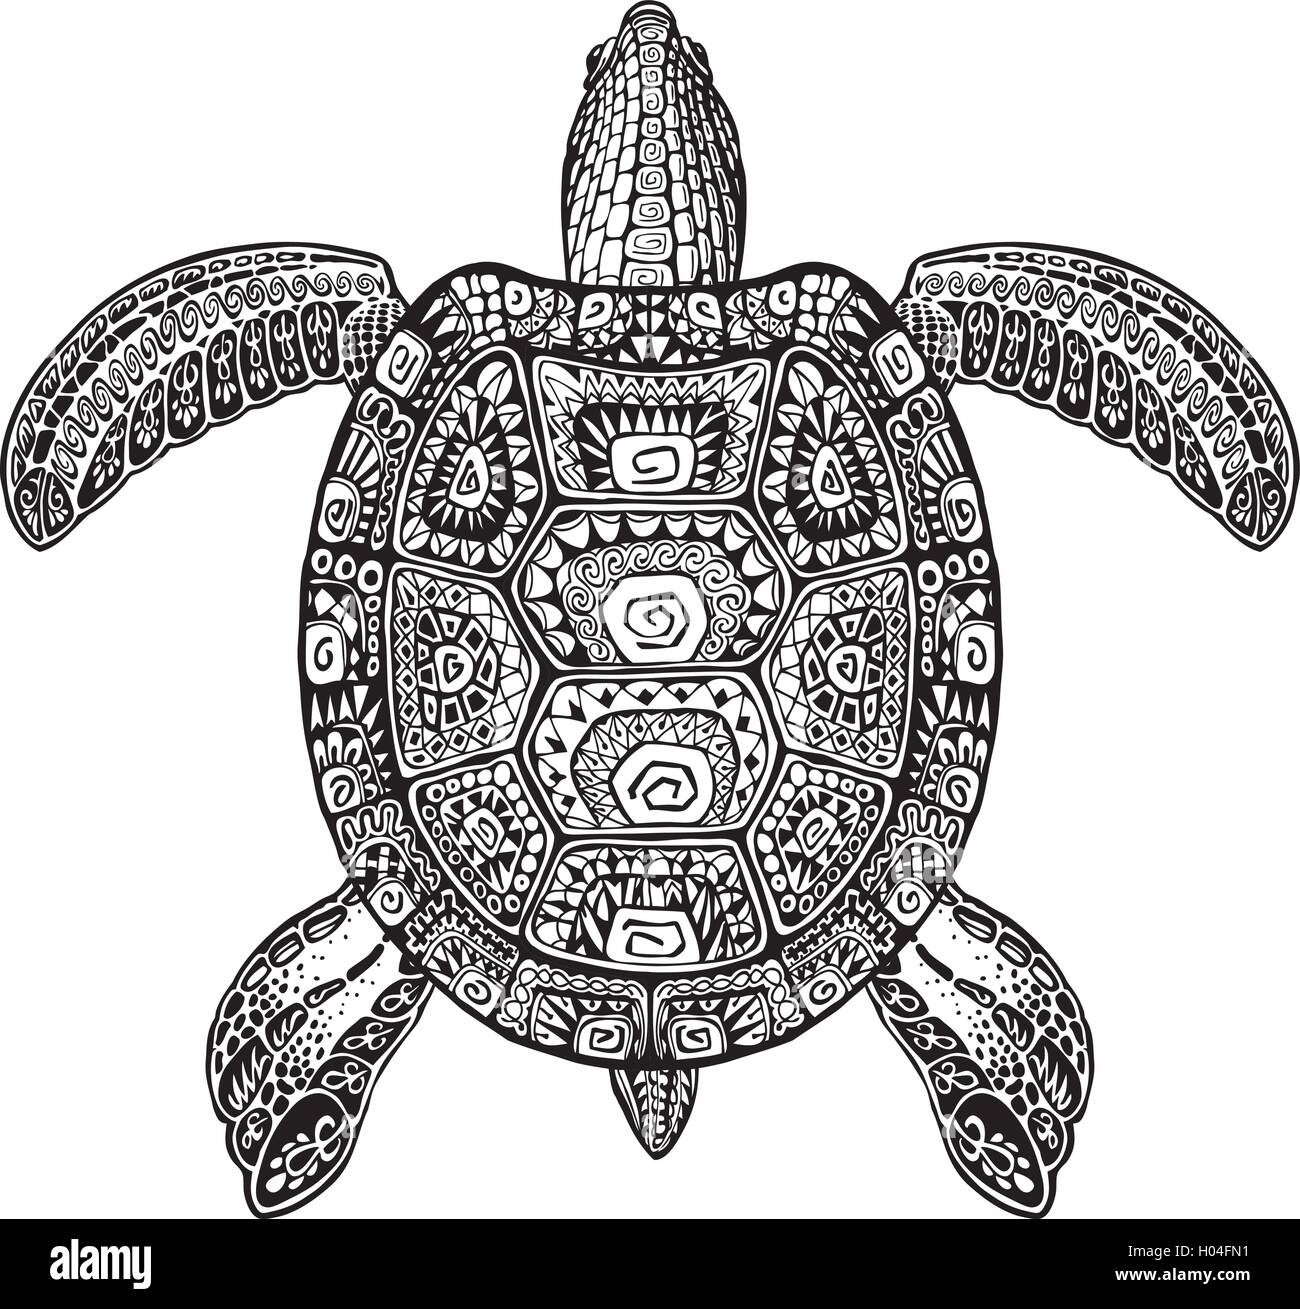 Schildkröte, turtle gemalten Stammes-ethnischen Ornament. Hand gezeichnet Vektor-Illustration mit dekorativen Mustern Stock Vektor